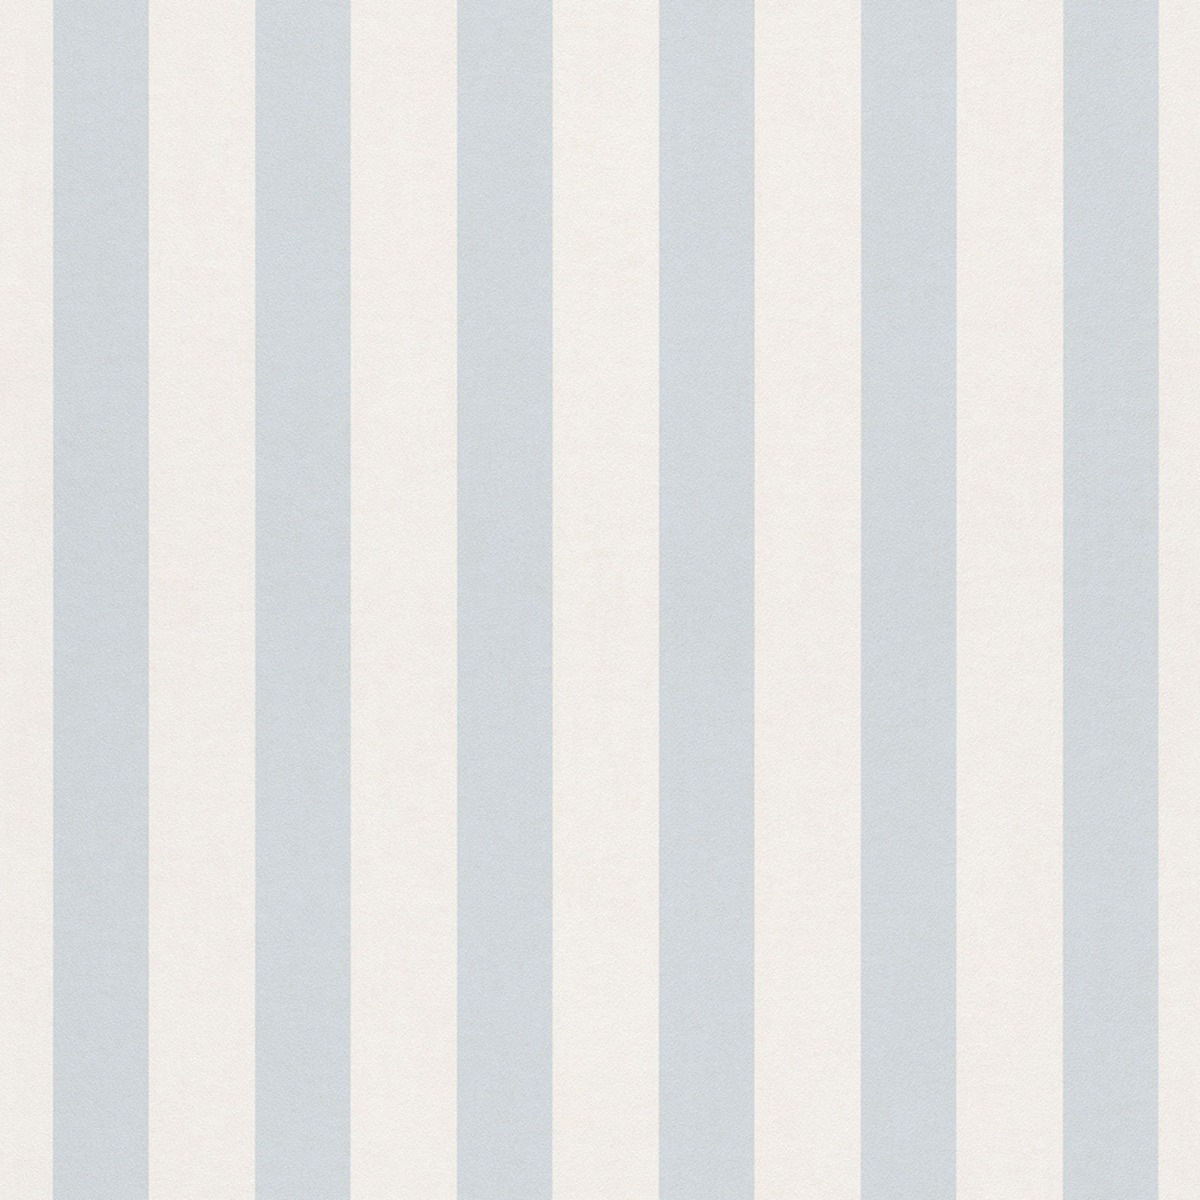 Bambino XVIII Narrow Stripe Wallpaper Navy White Rasch 246049 New